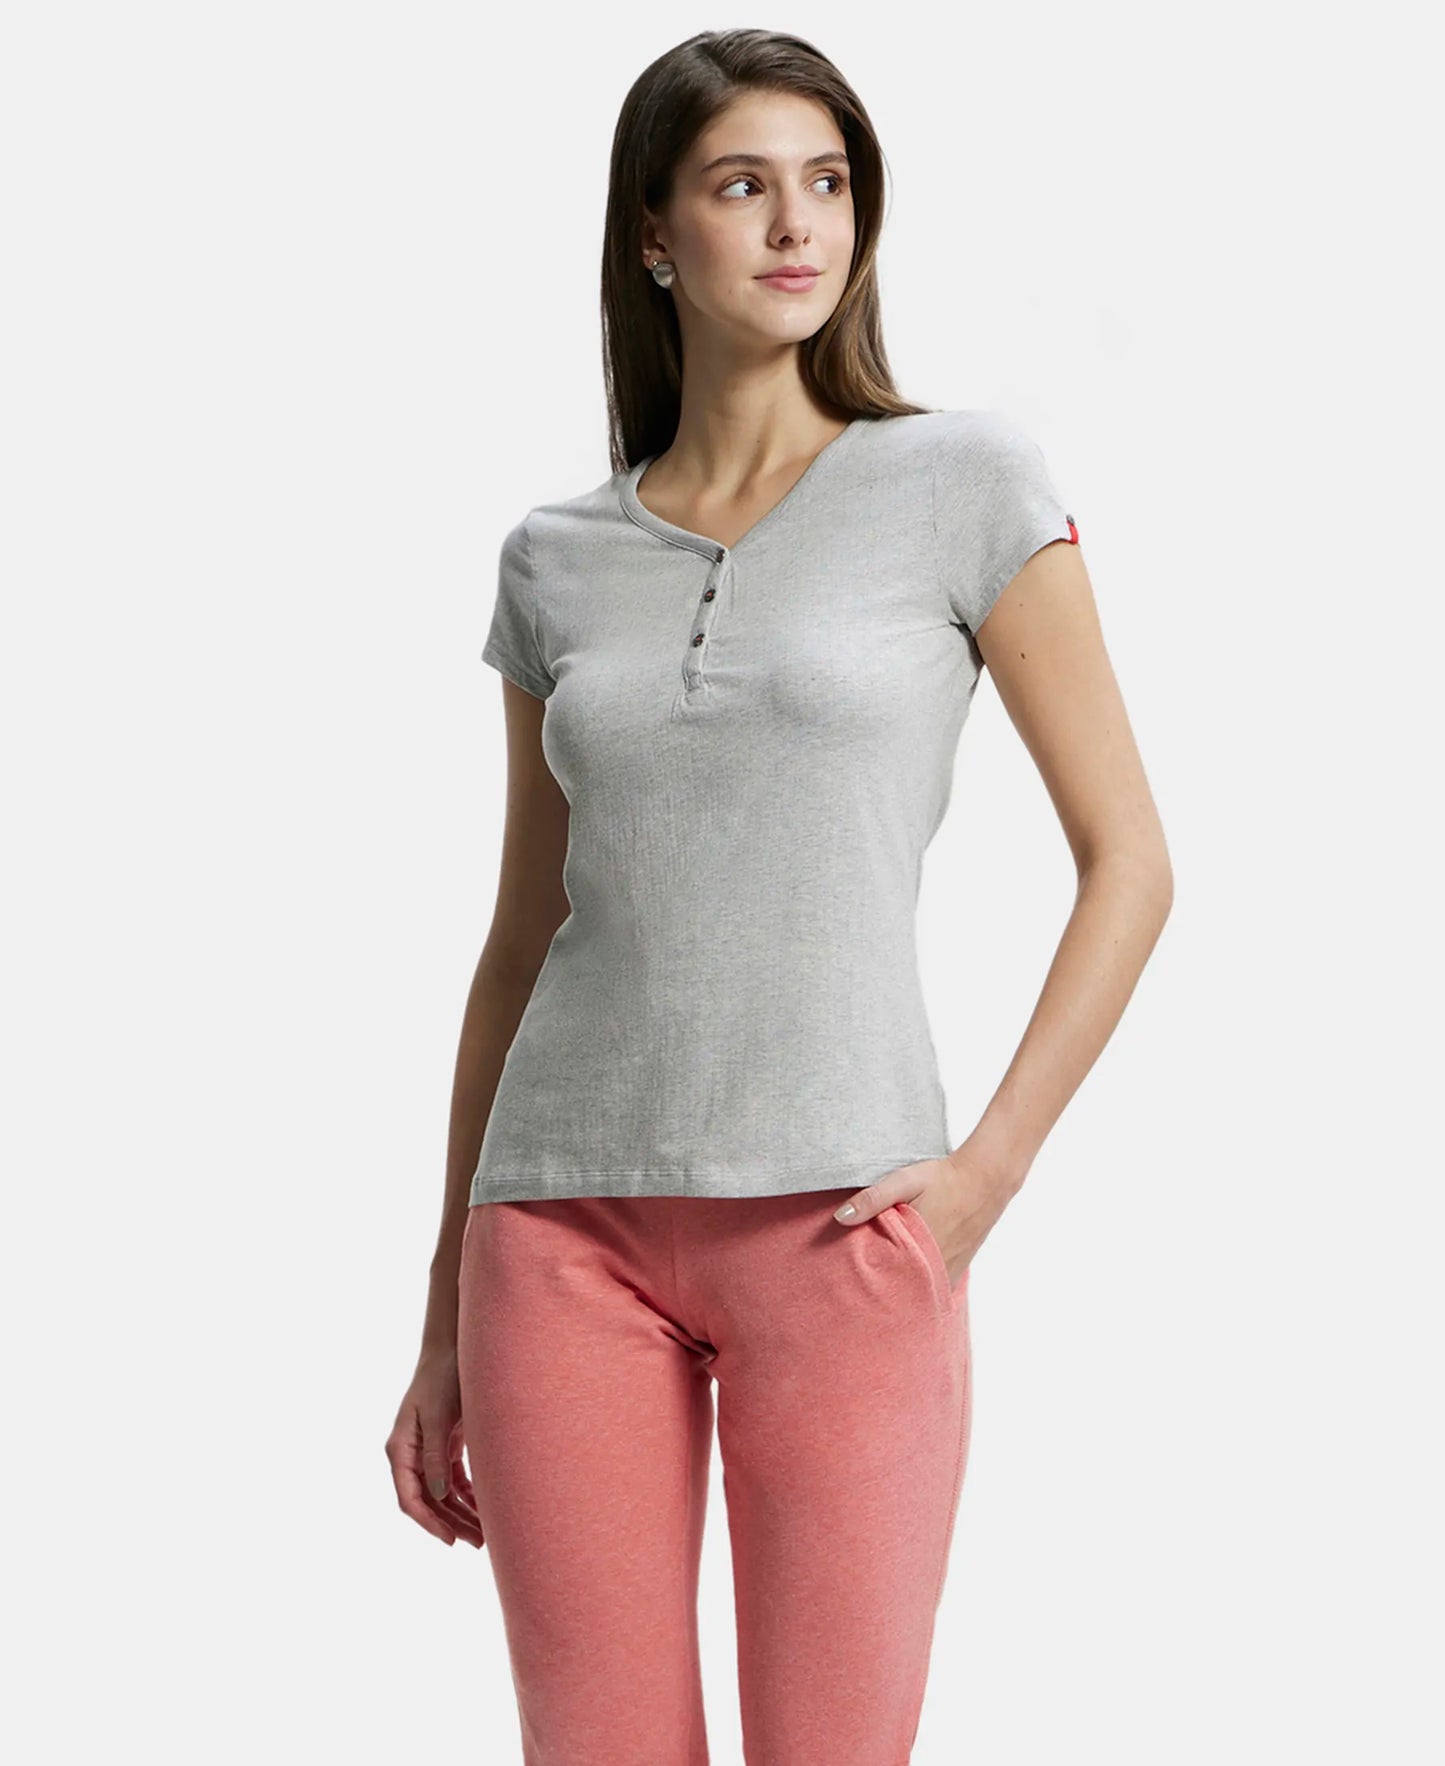 Super Combed Cotton Elastane Stretch Slim Fit Solid V Neck Henley Styled Half Sleeve T-Shirt - Light Grey Melange-5